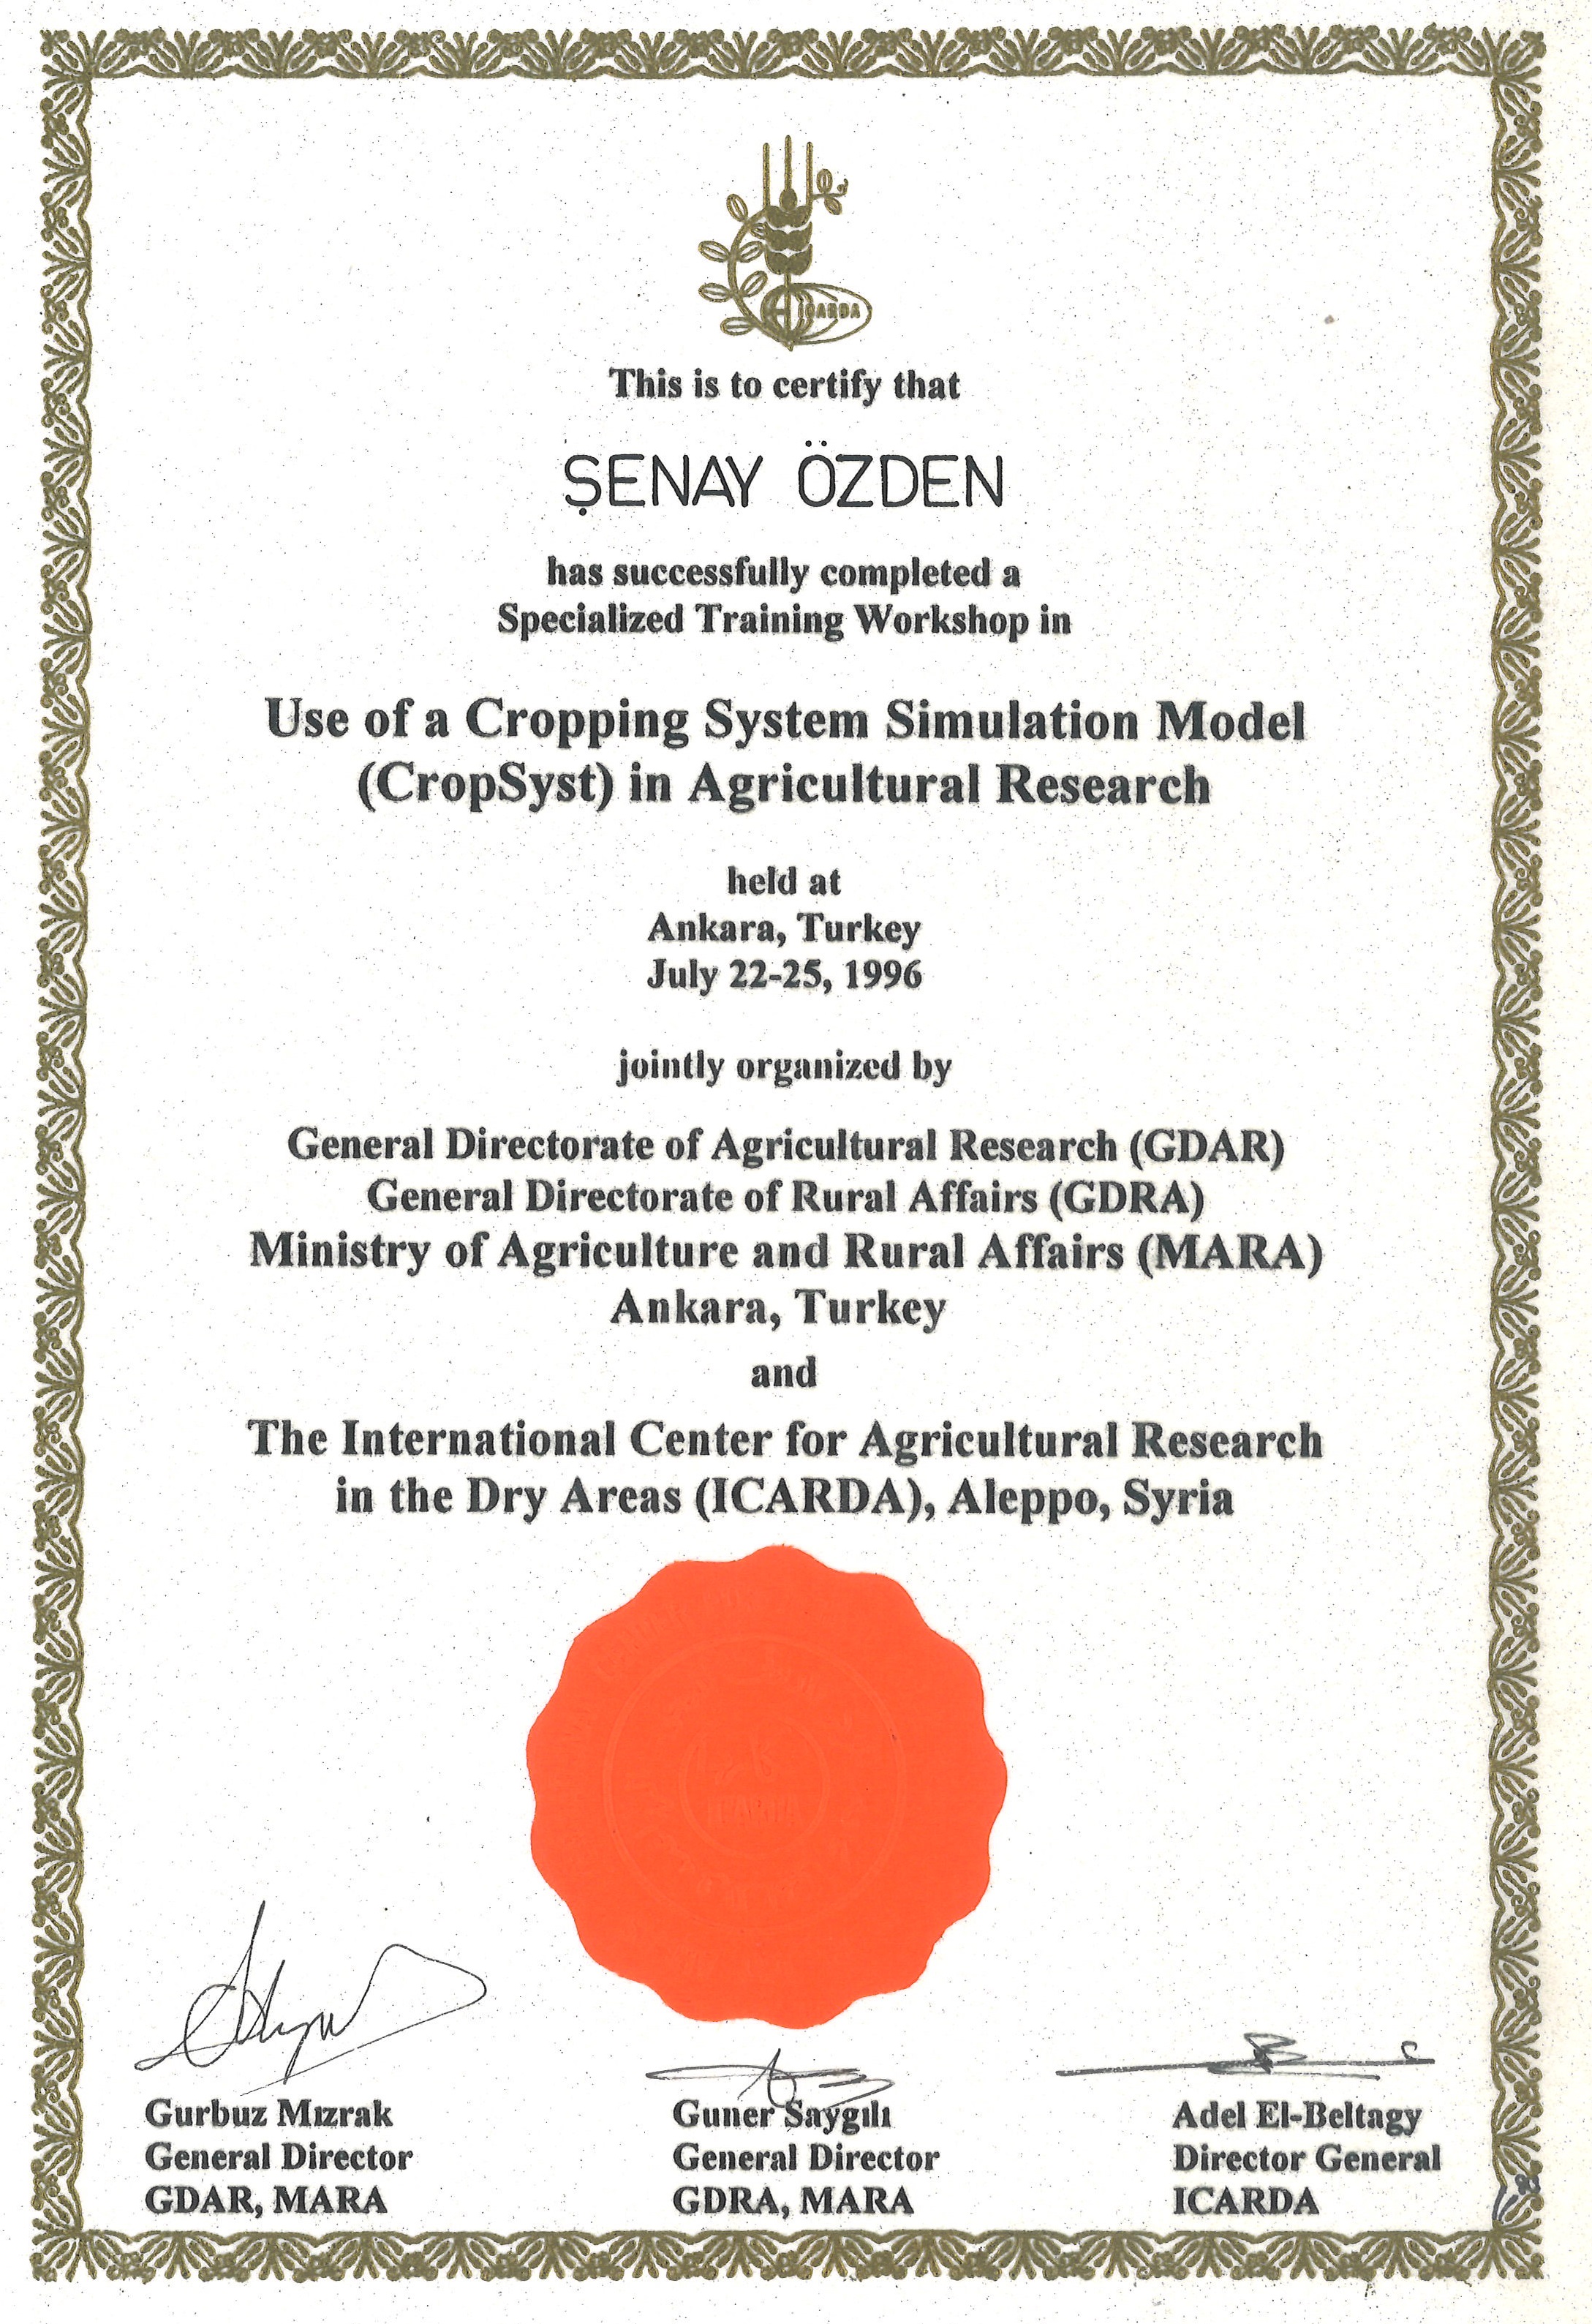 ICARDA CropSyst Eğitimi 22-25 Temmuz 1996